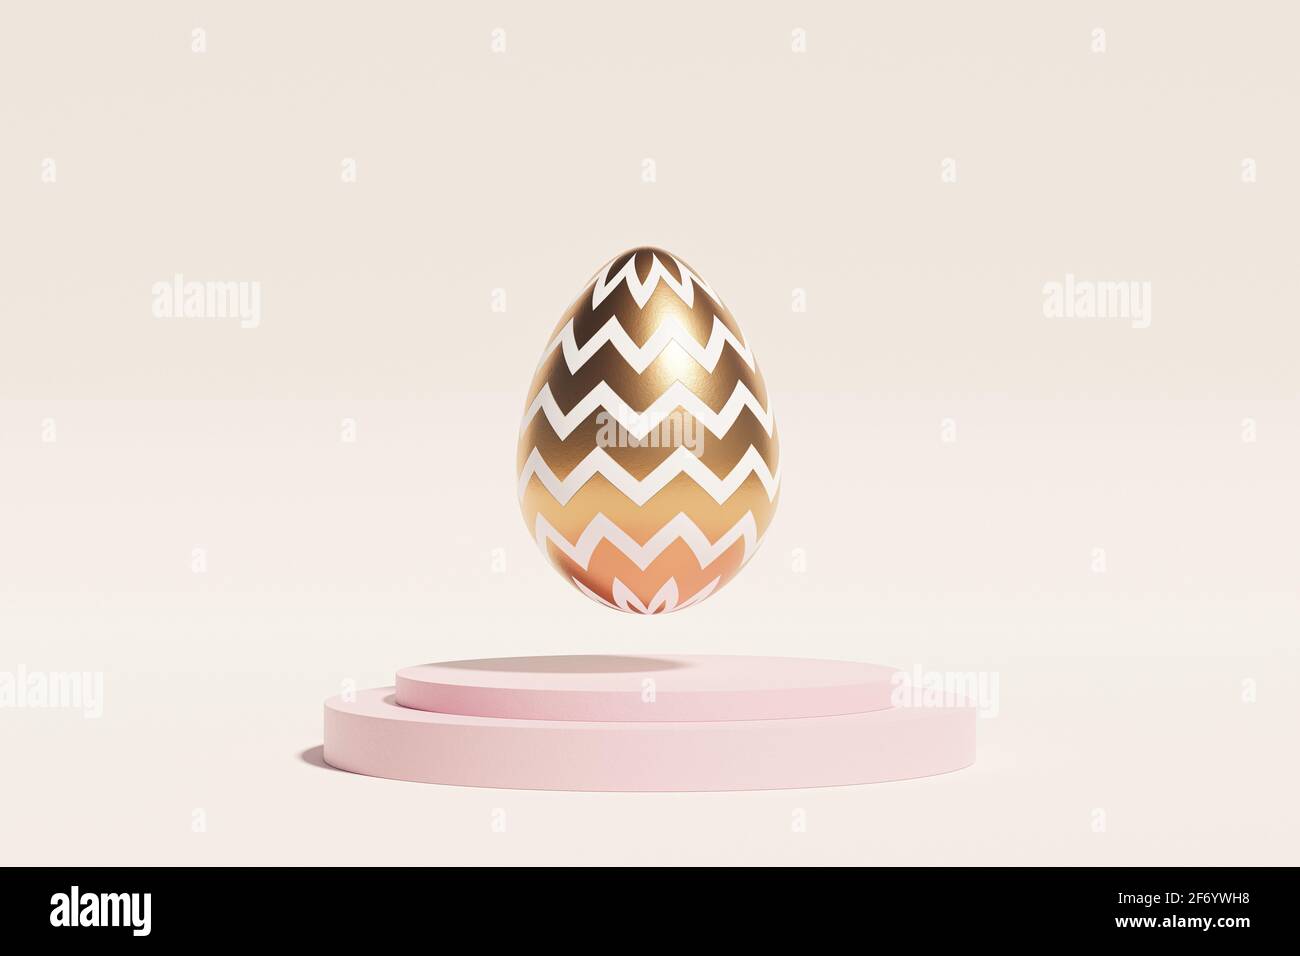 Oeuf de Pâques décoré de lévités d'or sur podium rose, fond beige, carte de vacances du printemps avril, rendu d'illustration 3d Banque D'Images